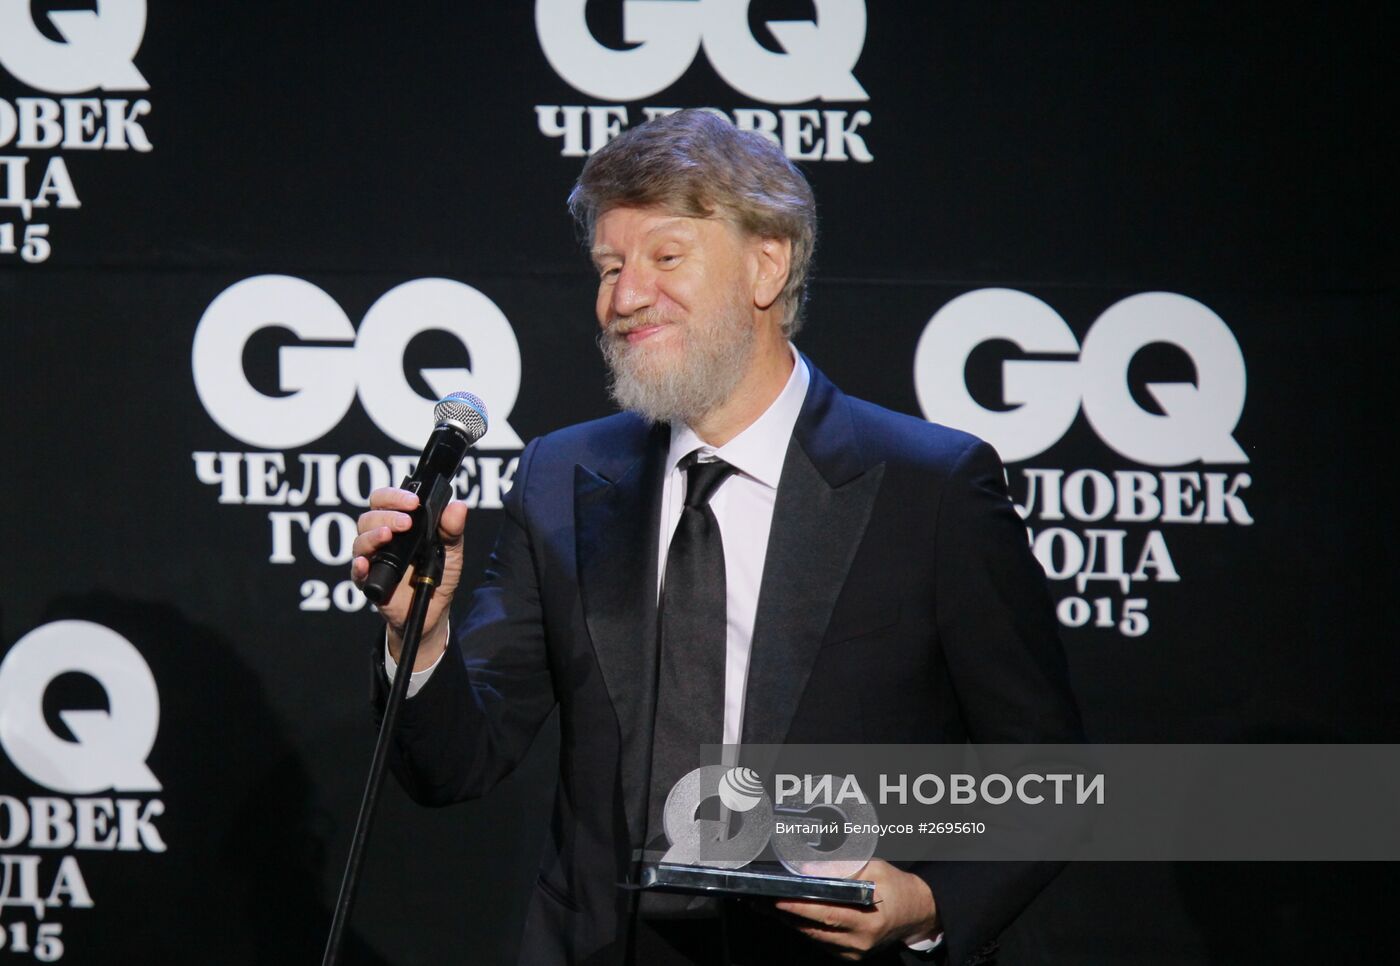 Церемония вручения премии "Человек года" по версии журнала GQ